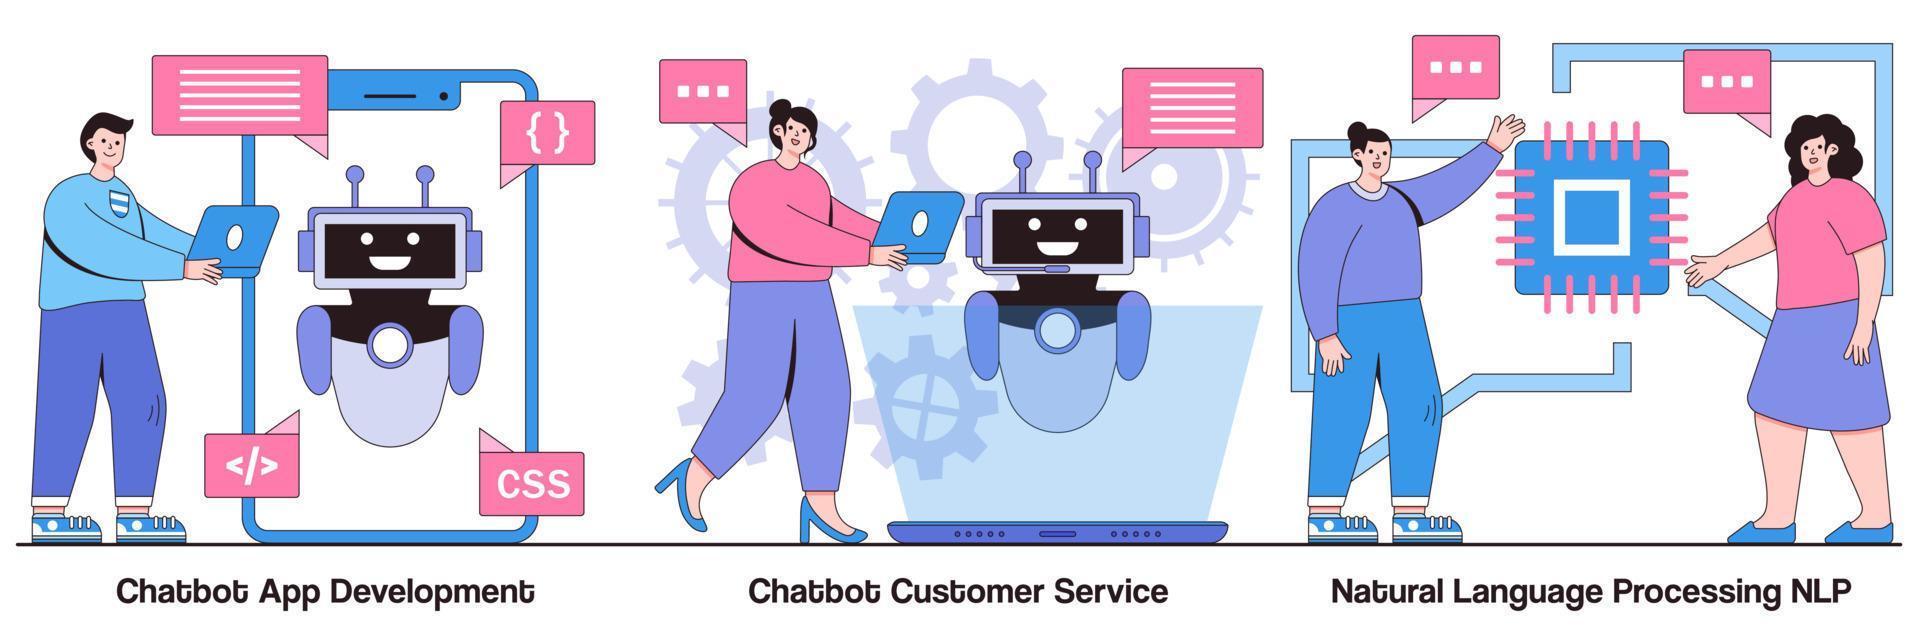 pacote ilustrado de desenvolvimento de aplicativos chatbot, atendimento ao cliente e processamento de linguagem natural vetor